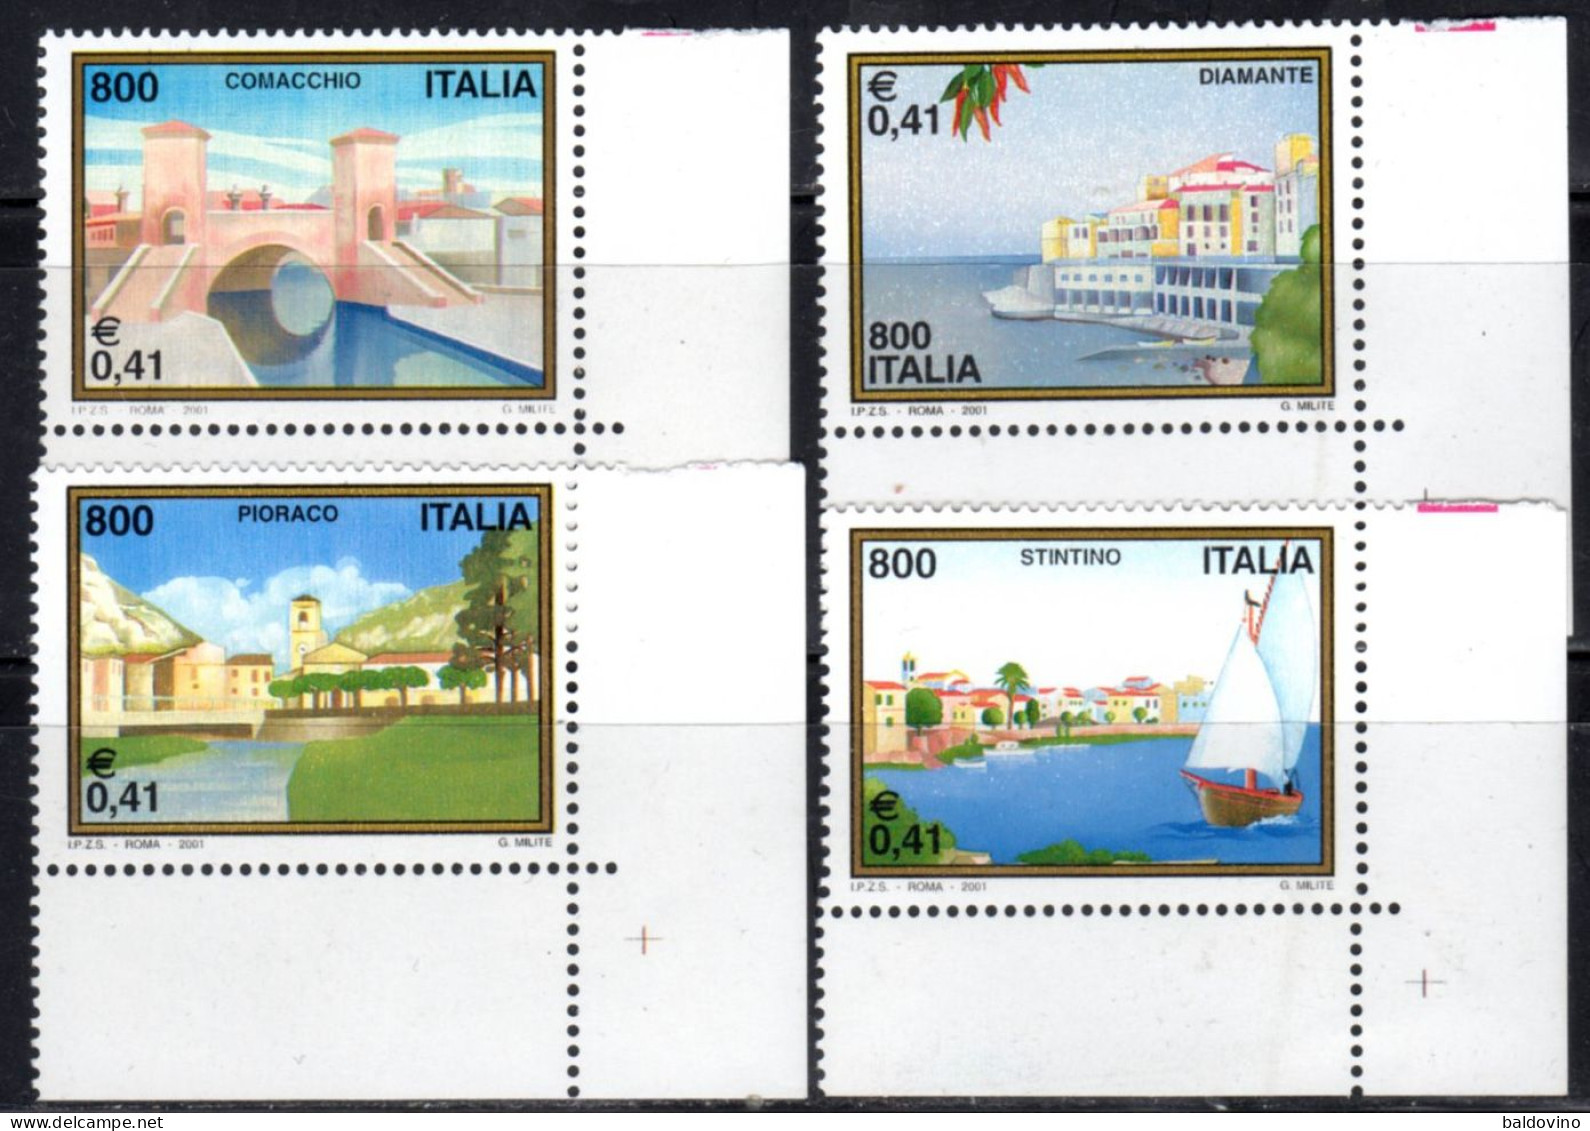 Italia 2001 Serie Turistica 4 Valori Nuovi Perfetti (vedi Descrizione) - 2001-10: Ungebraucht